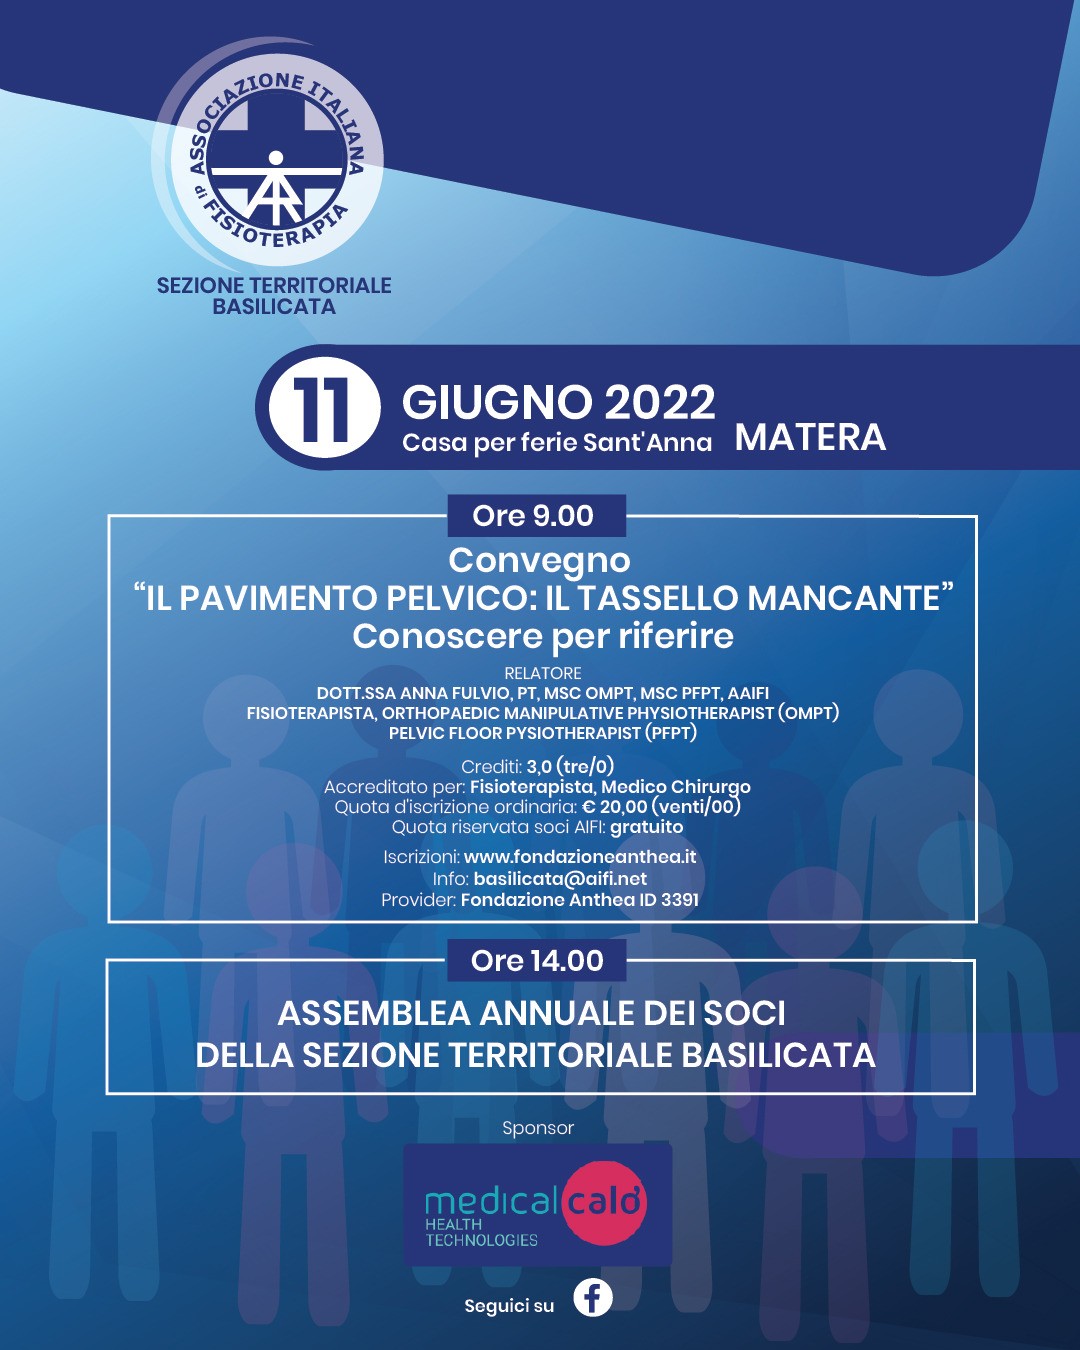 Evento formativo ECM “Il pavimento pelvico: il tassello mancante”, 11 giugno 2022, Matera